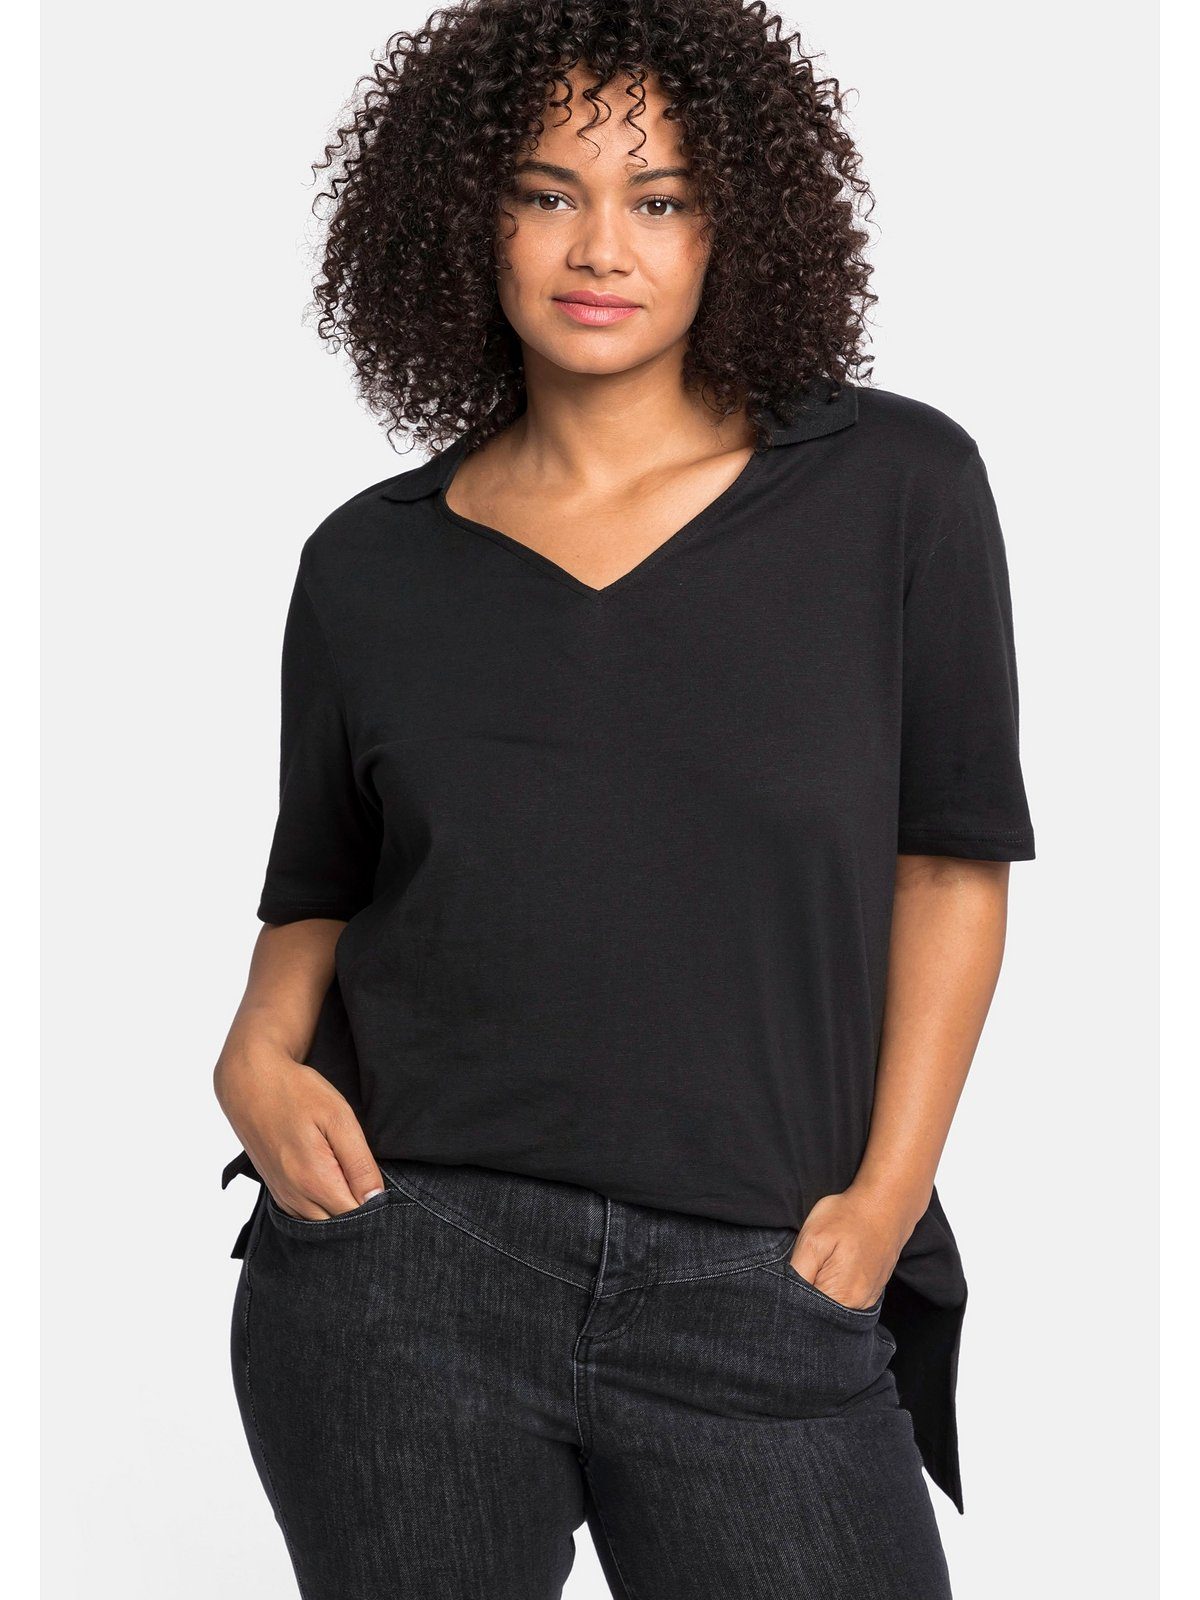 Polokragen T-Shirt Sheego schwarz Größen und asymmetrischem mit Große Saum